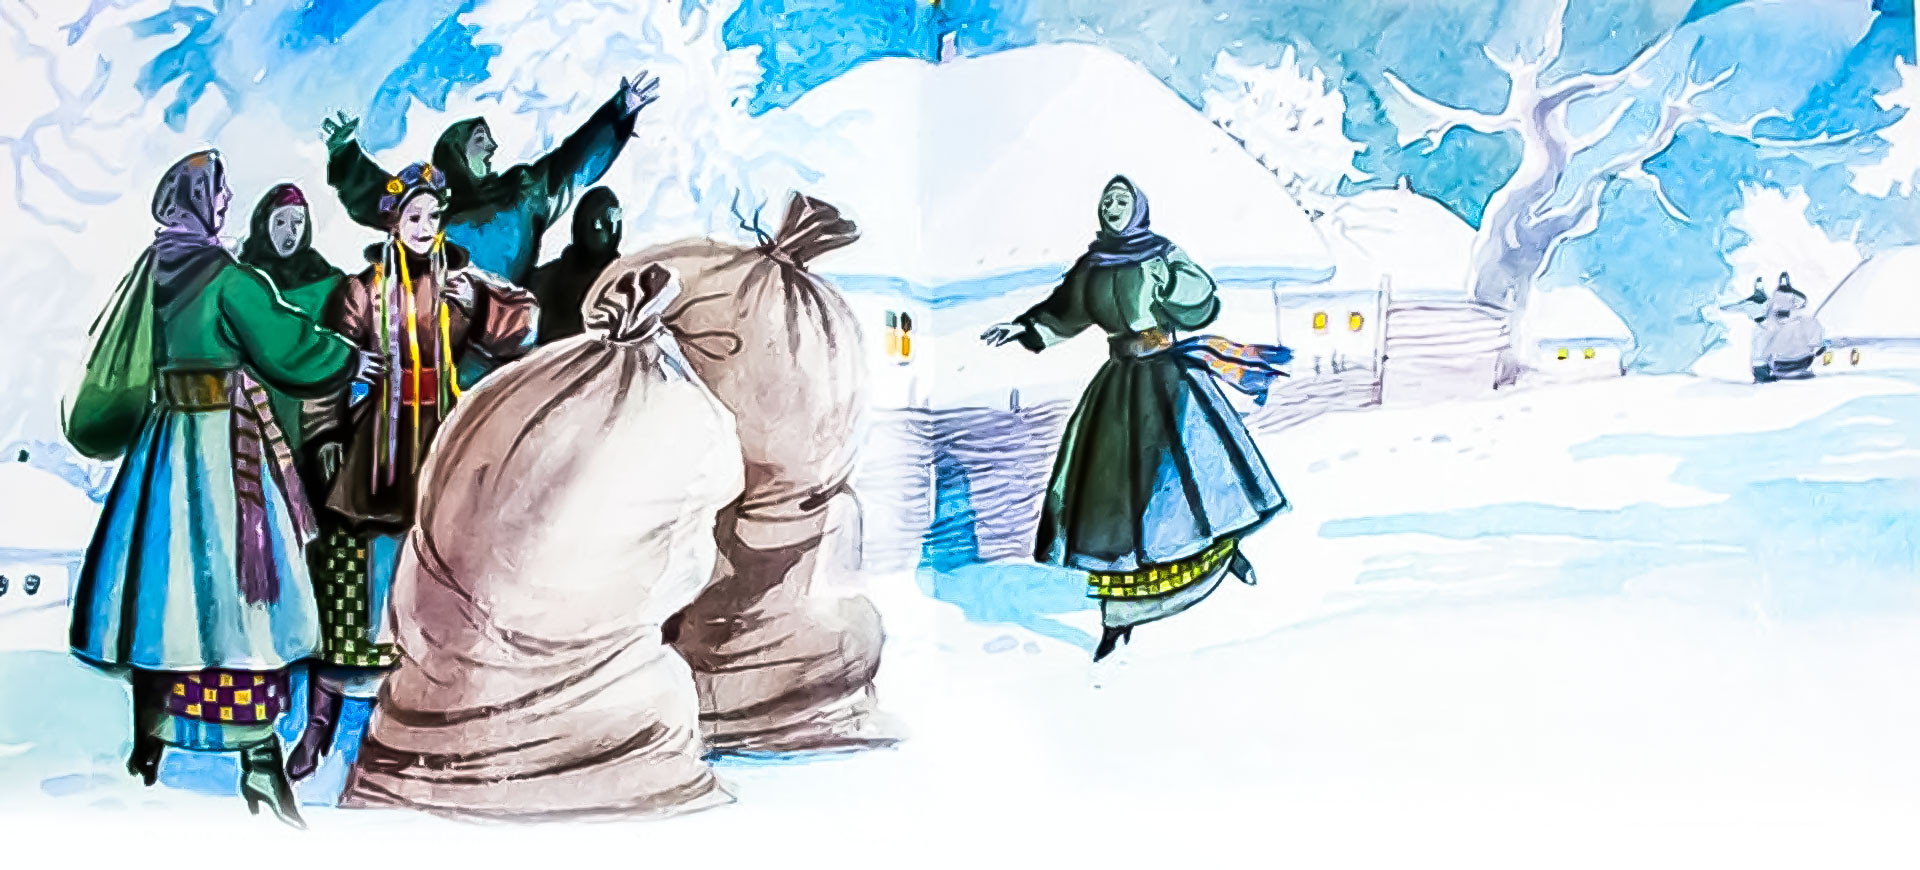 Ночь перед рождеством род. Иллюстрация к повести Гоголя ночь перед Рождеством. Ночь перед Рождеством Гоголь. Иллюстрации к ночь перед Рождеством Гоголя 5 класс. Гоголь ночь перед Рождеством иллюстрации с черевичками.